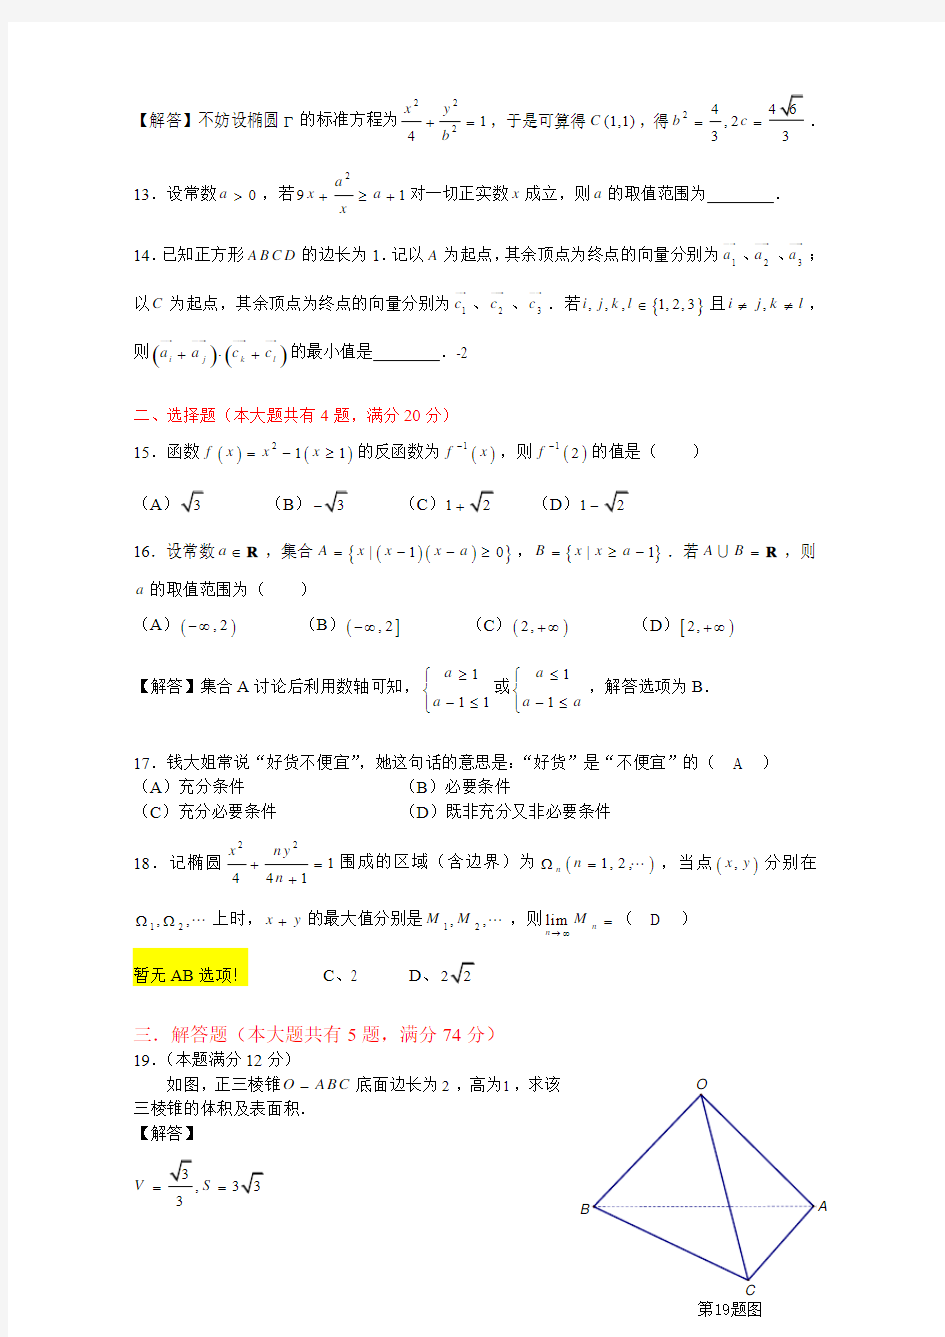 2013年上海高考数学试题(文科)及试卷答案解析